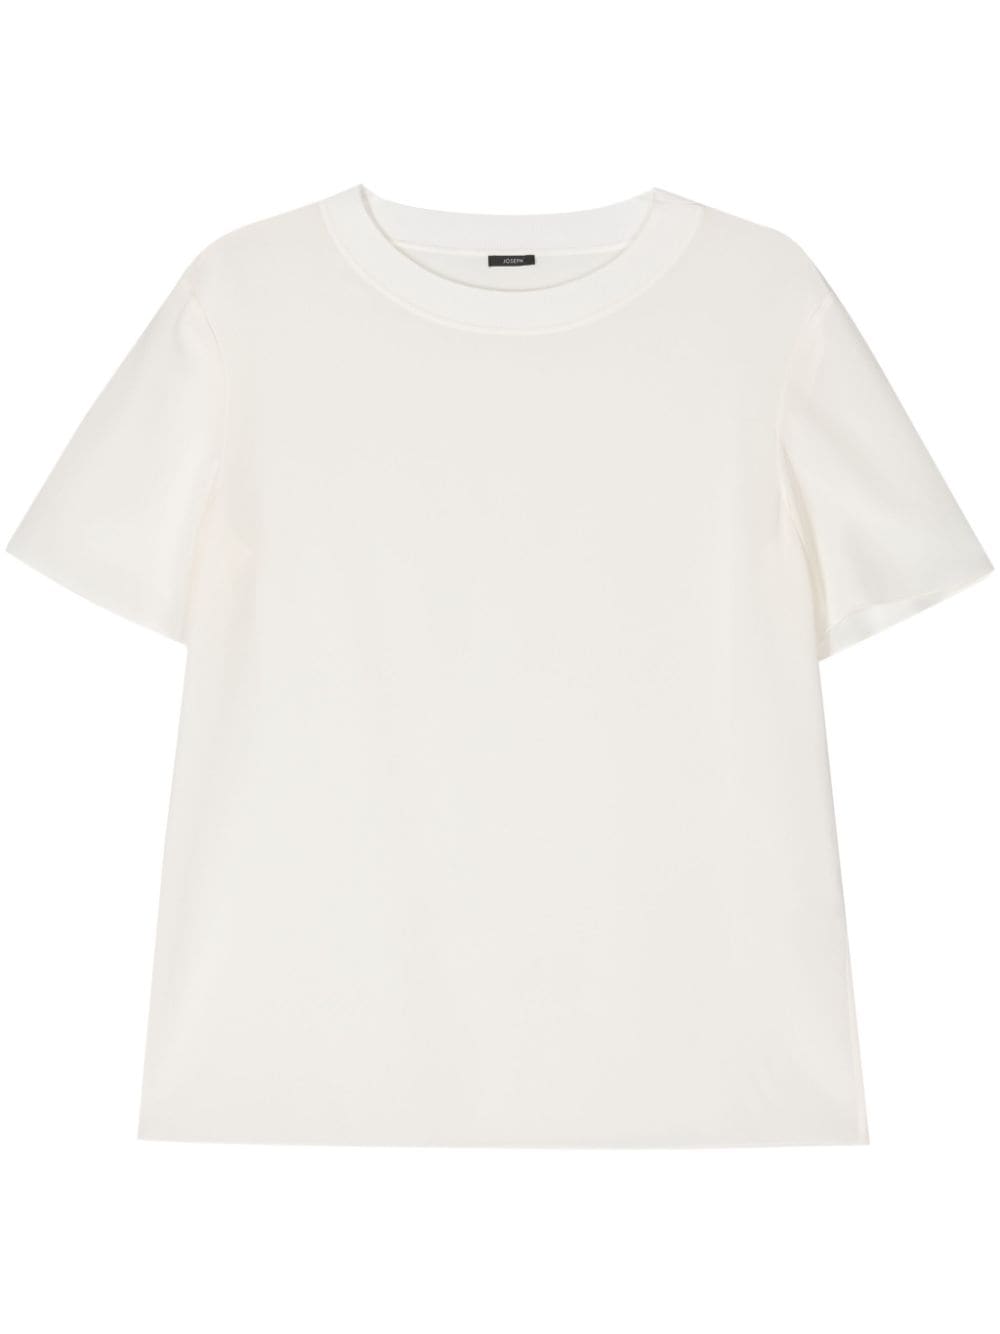 joseph t-shirt rubin en soie - blanc